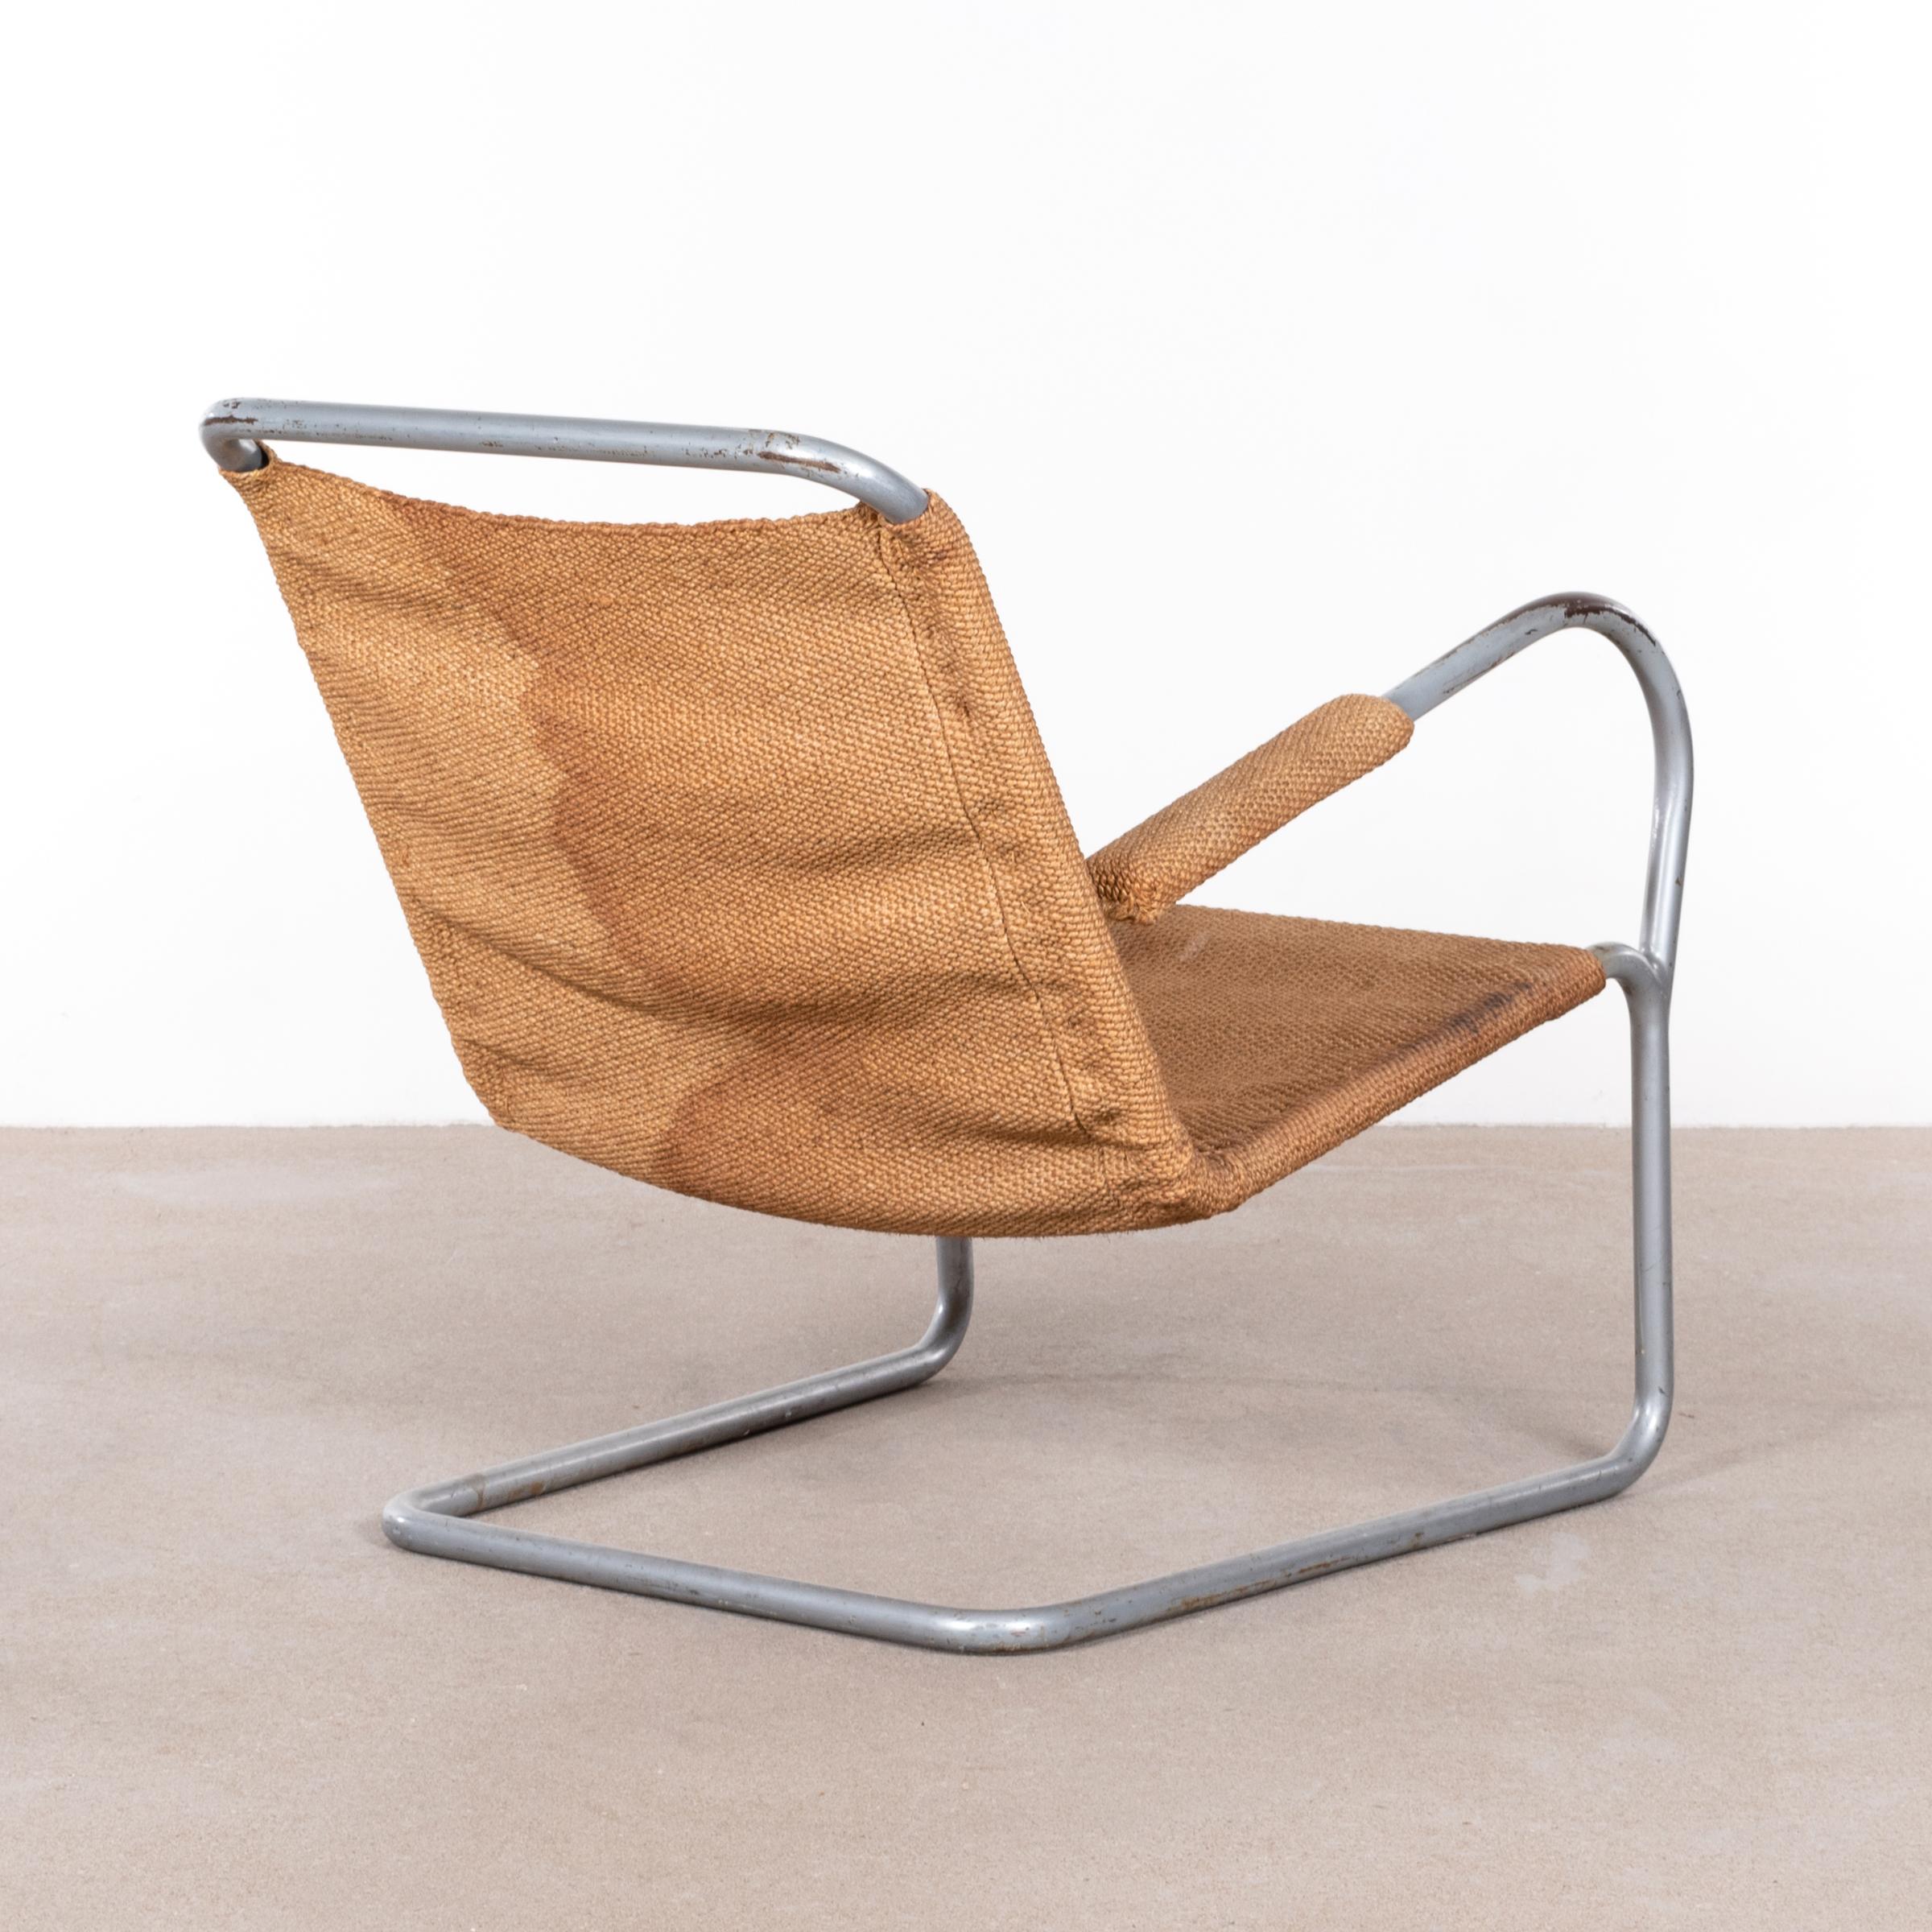 Bauhaus Lounge Chair in Tube Steel and Burlap by Bas Van Pelt, Netherlands